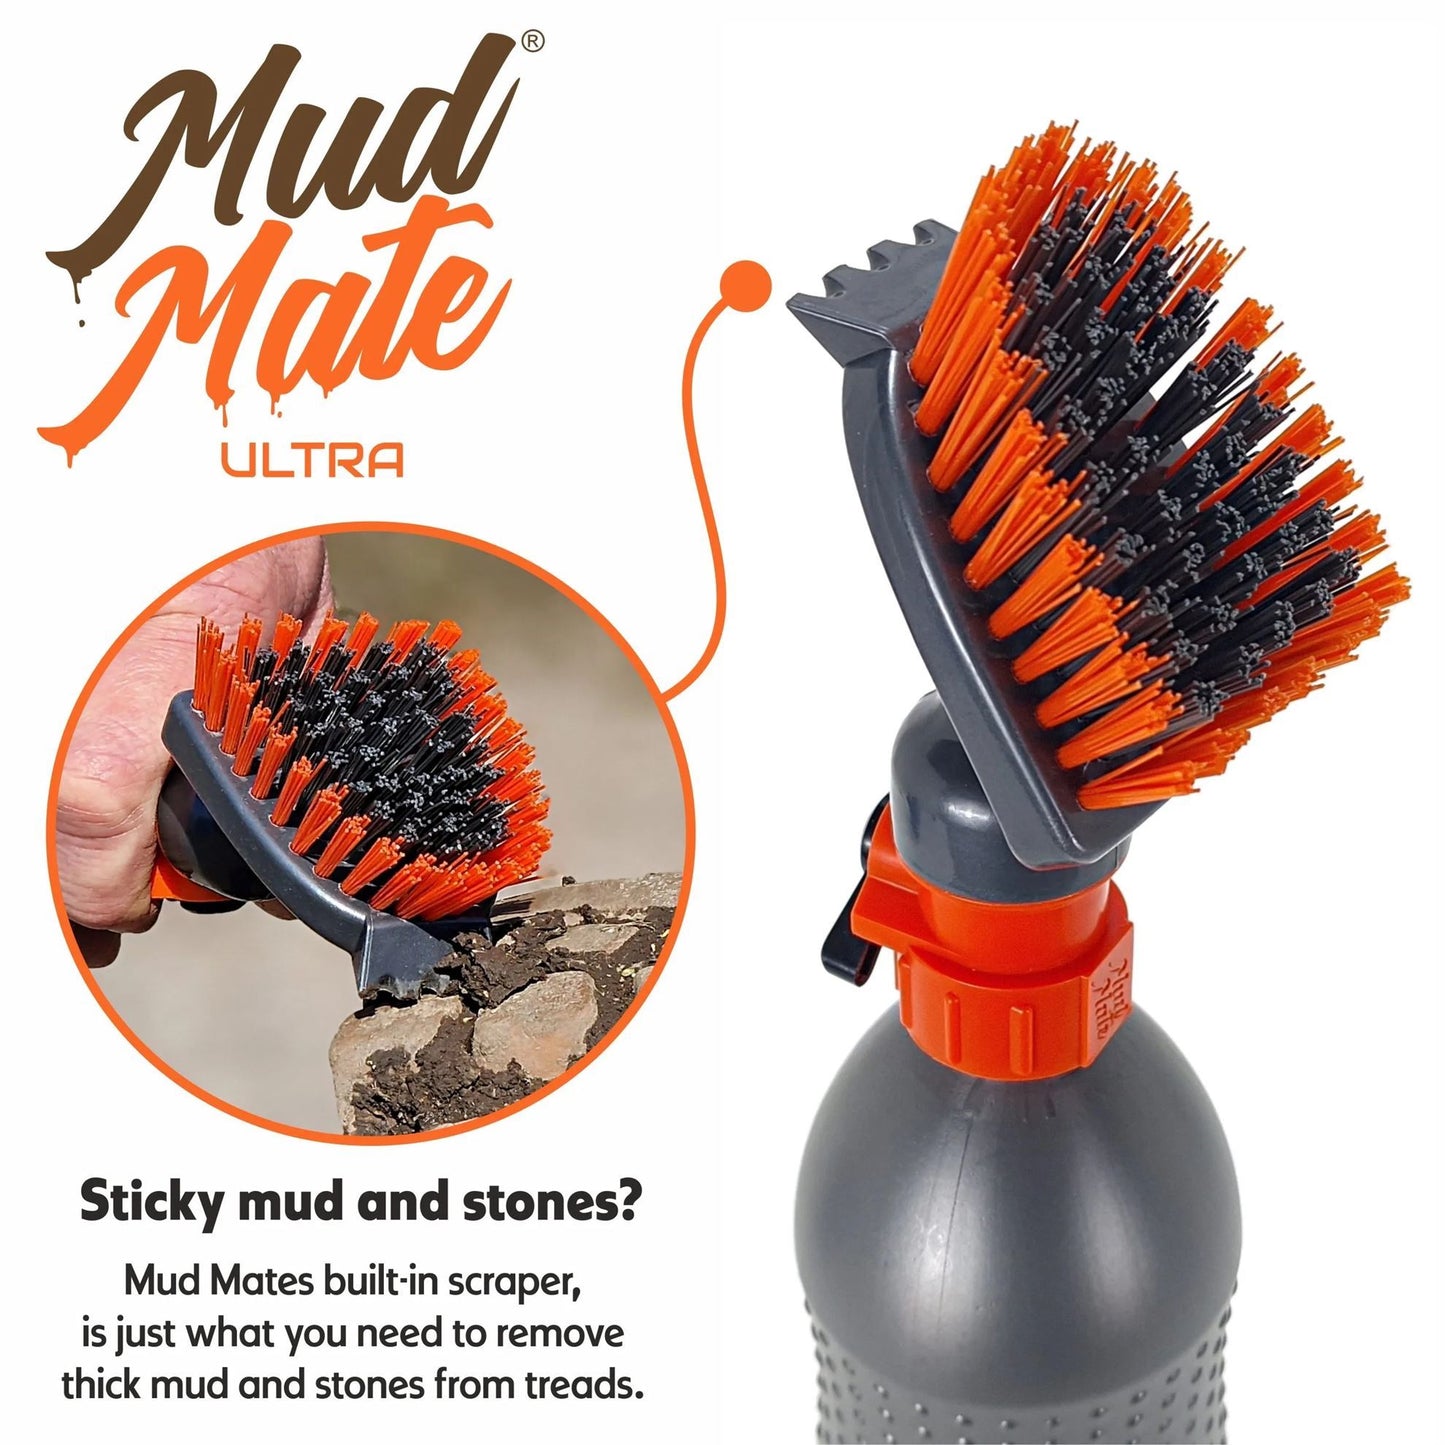 Mud Mate Ultra